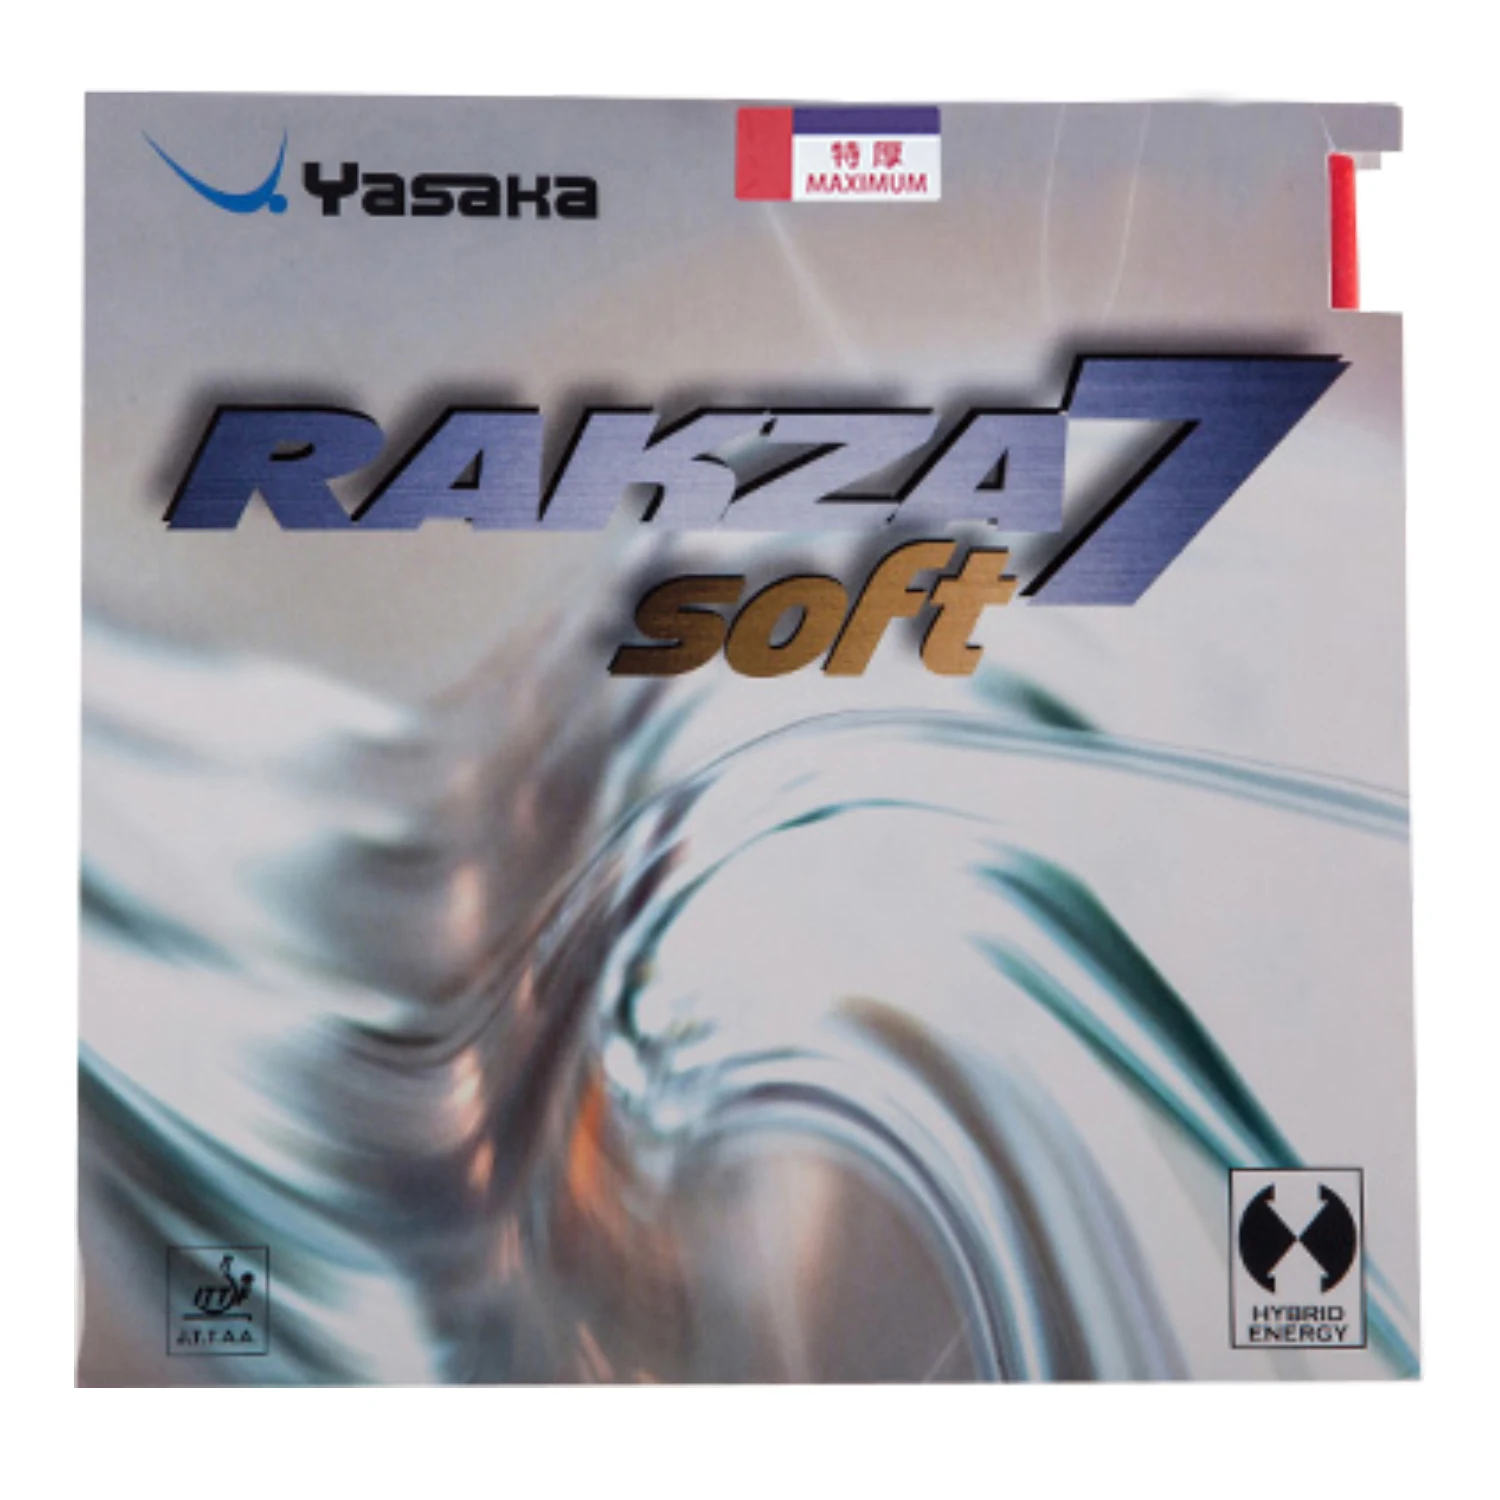 Yasaka Original RAKZA 7 SOFT RK7 Пупырышки В Резиновой форме для настольного тенниса RAKZA7 SOFT Pips-В Губке для пинг-понга Tenis De Mesa